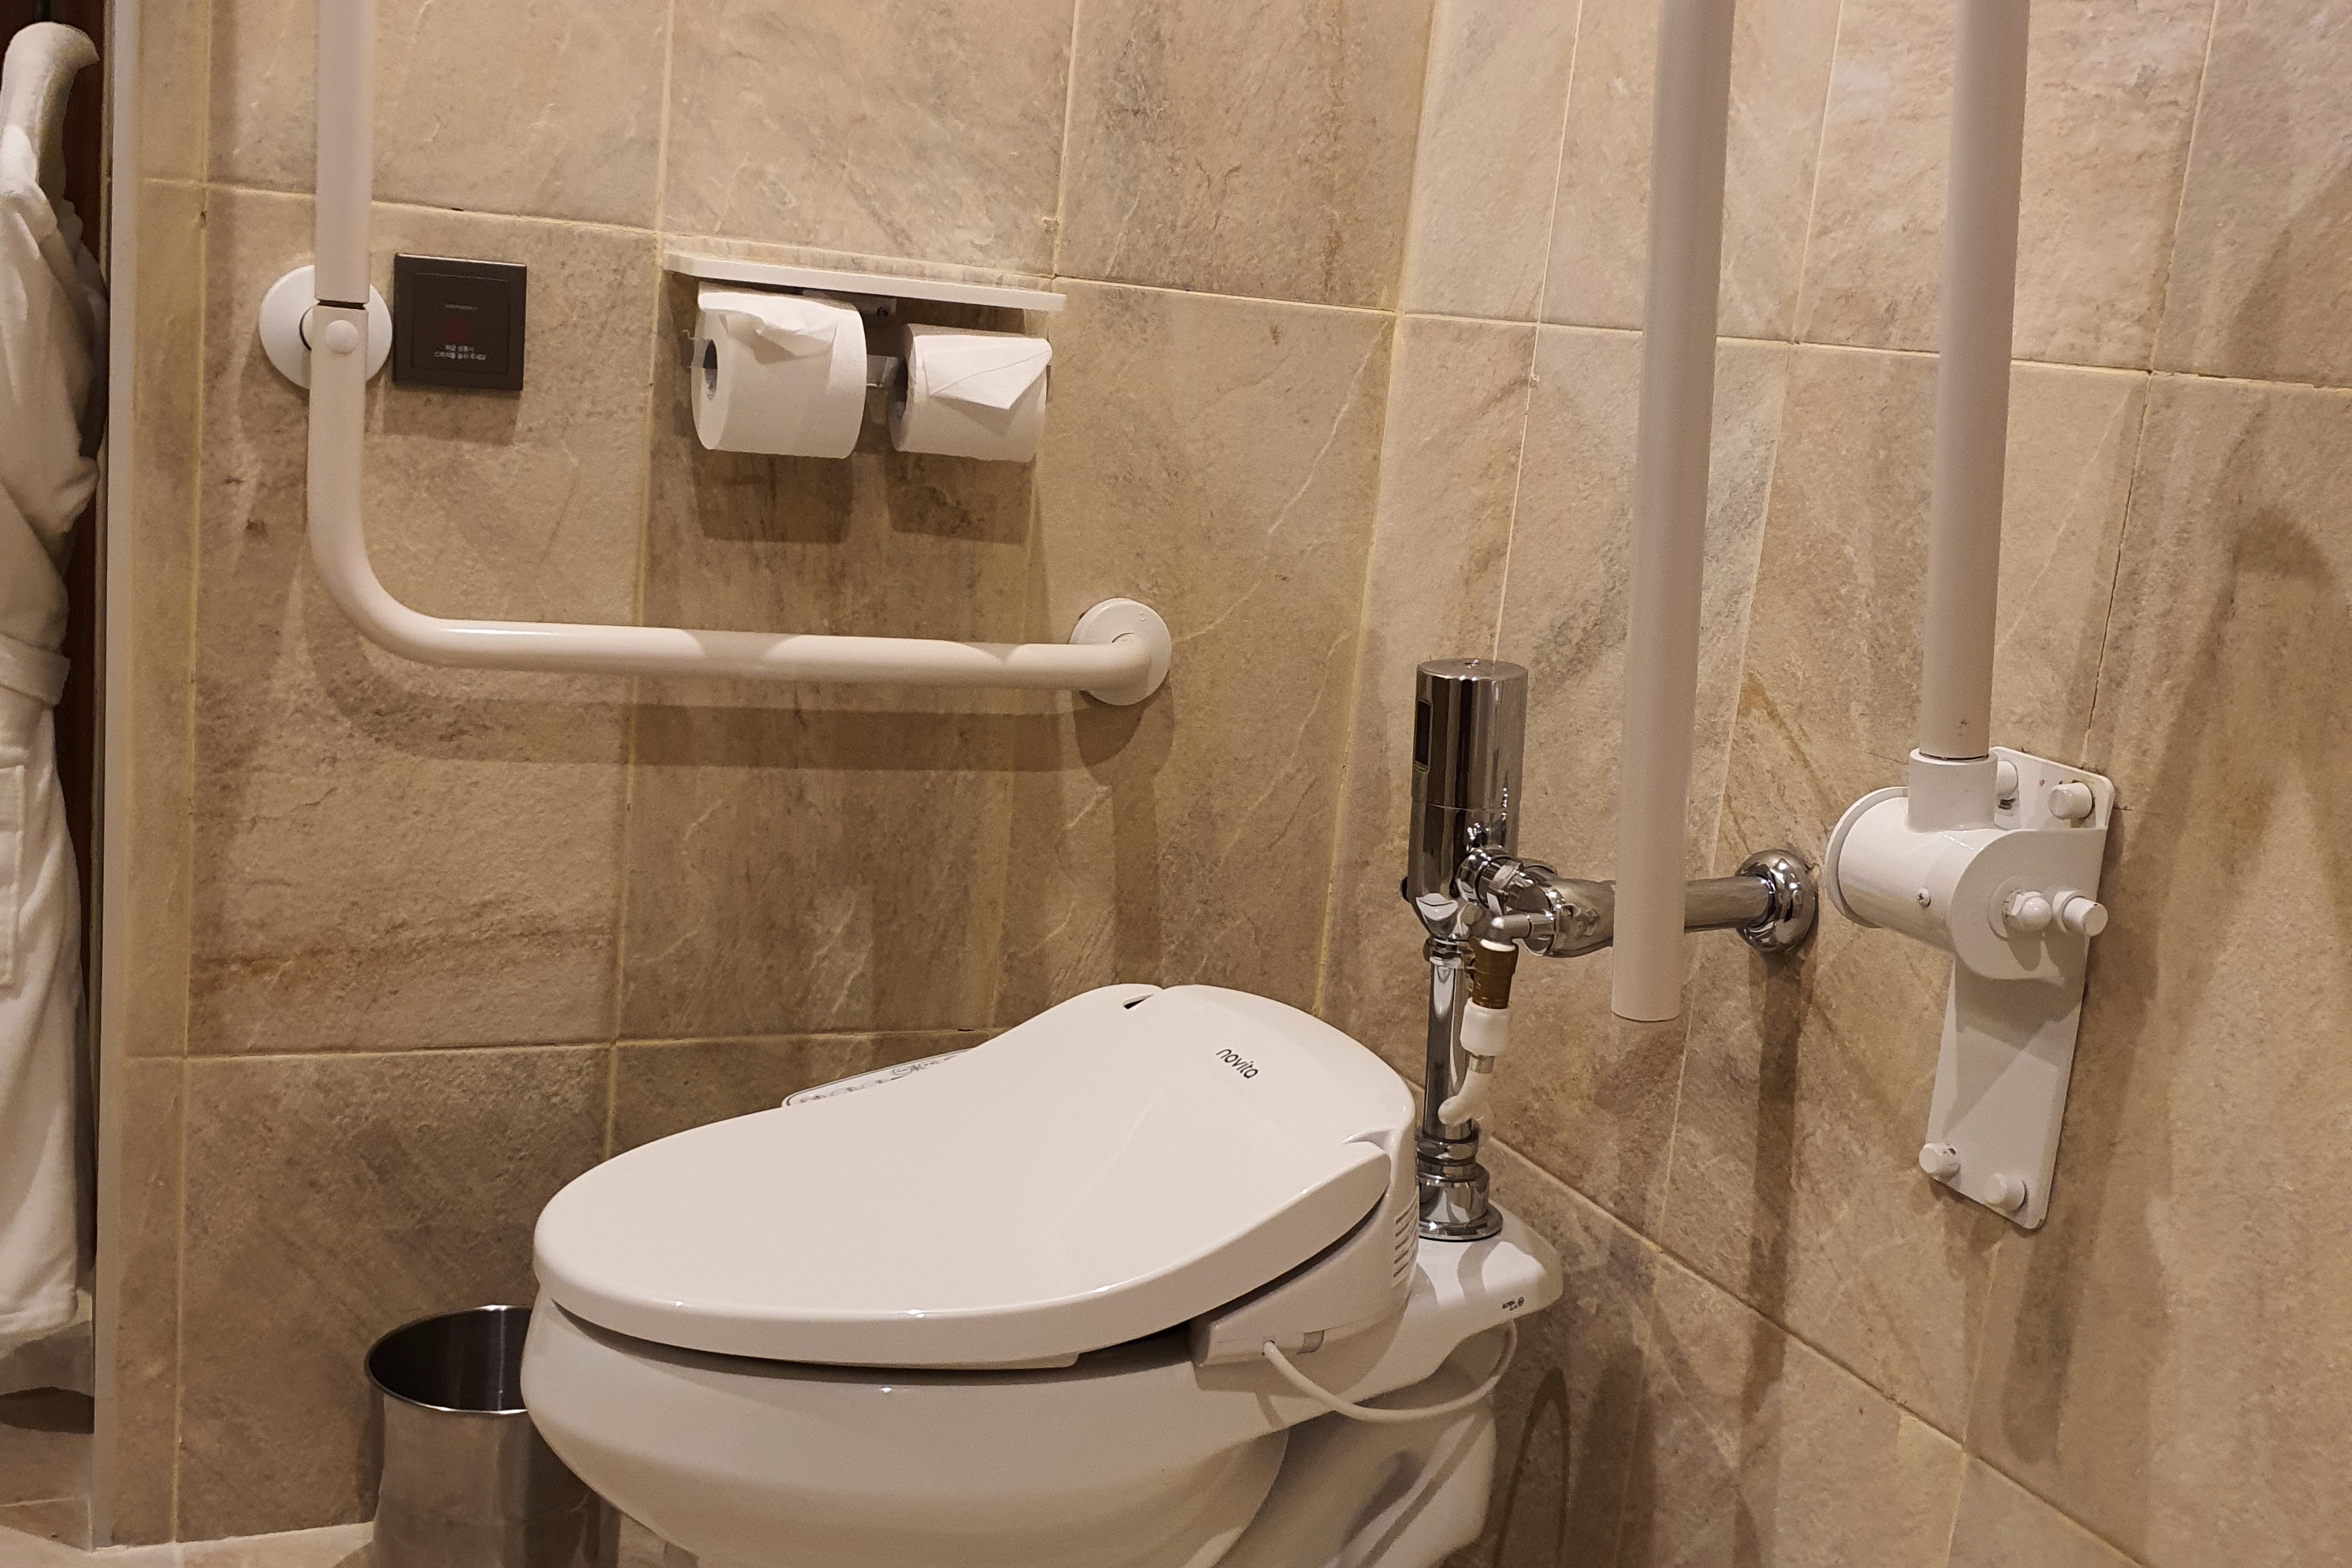 객실 내 화장실0 :  안전바가 설치된 객실 화장실